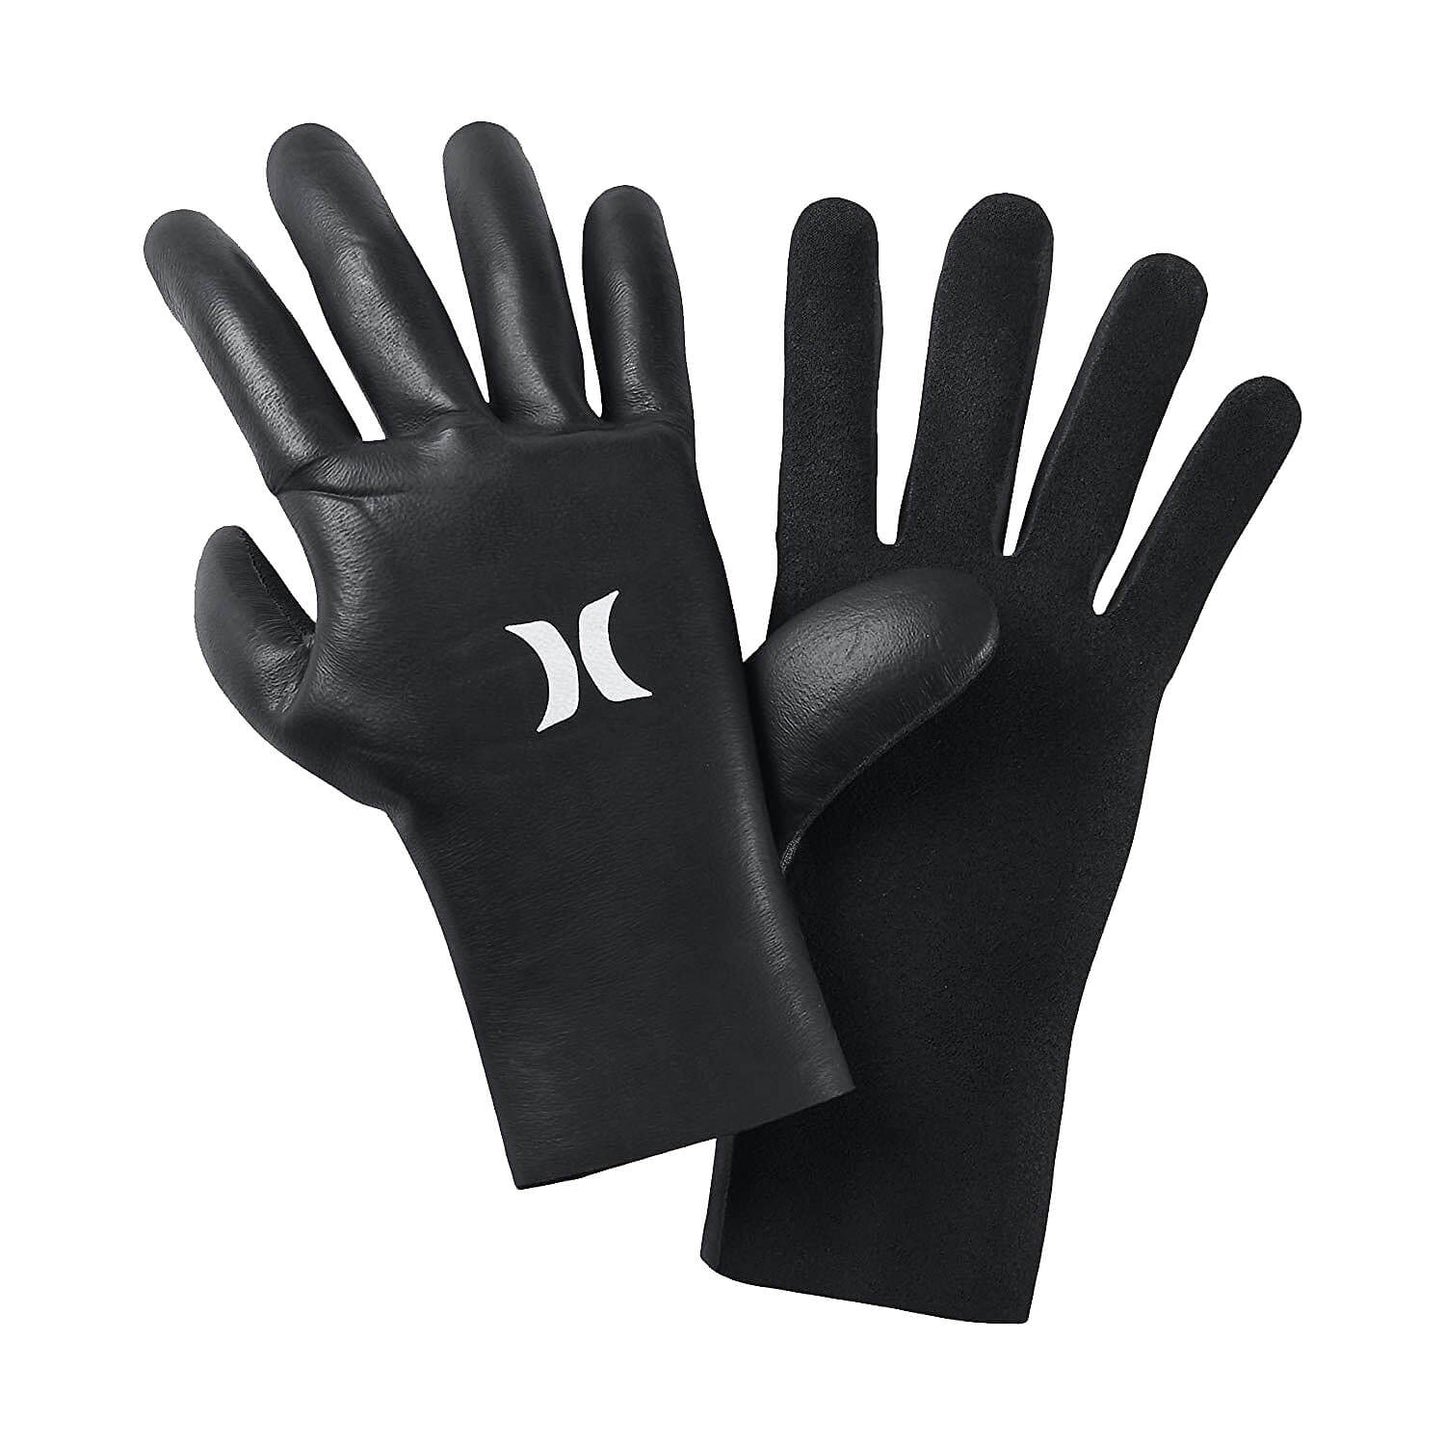 2mm Hurley ADVANTAGE PLUS Wetsuit Gloves